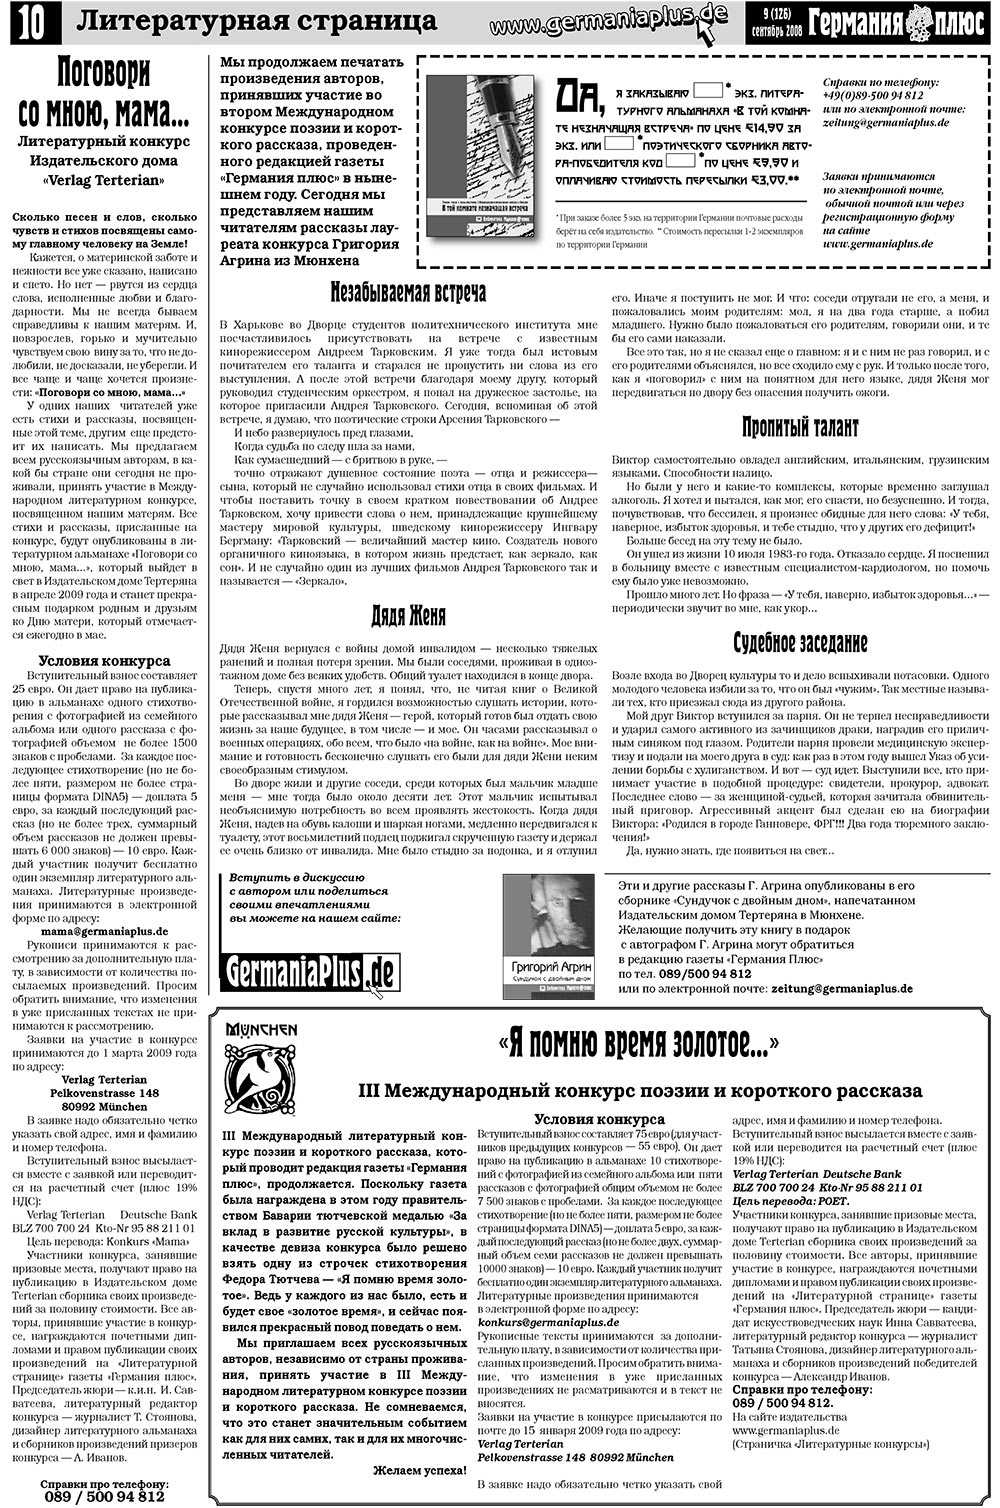 Германия плюс (газета). 2008 год, номер 9, стр. 14